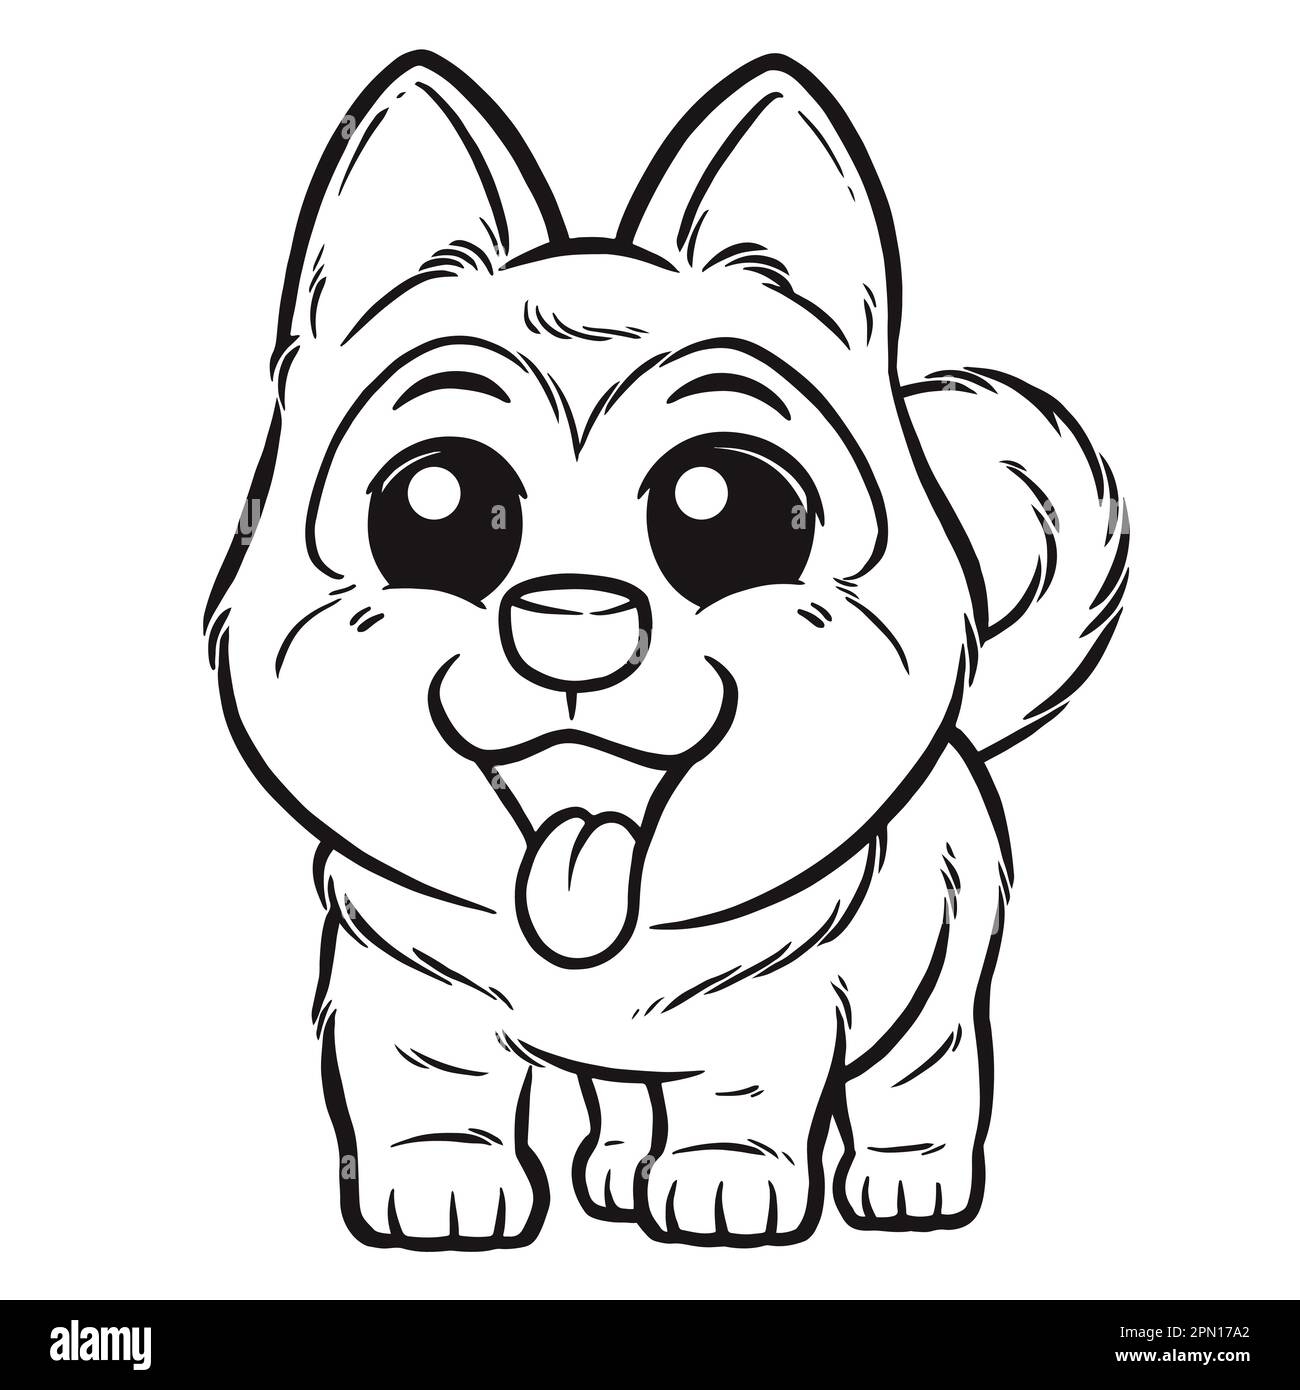 Vector illustration of cartoon dog